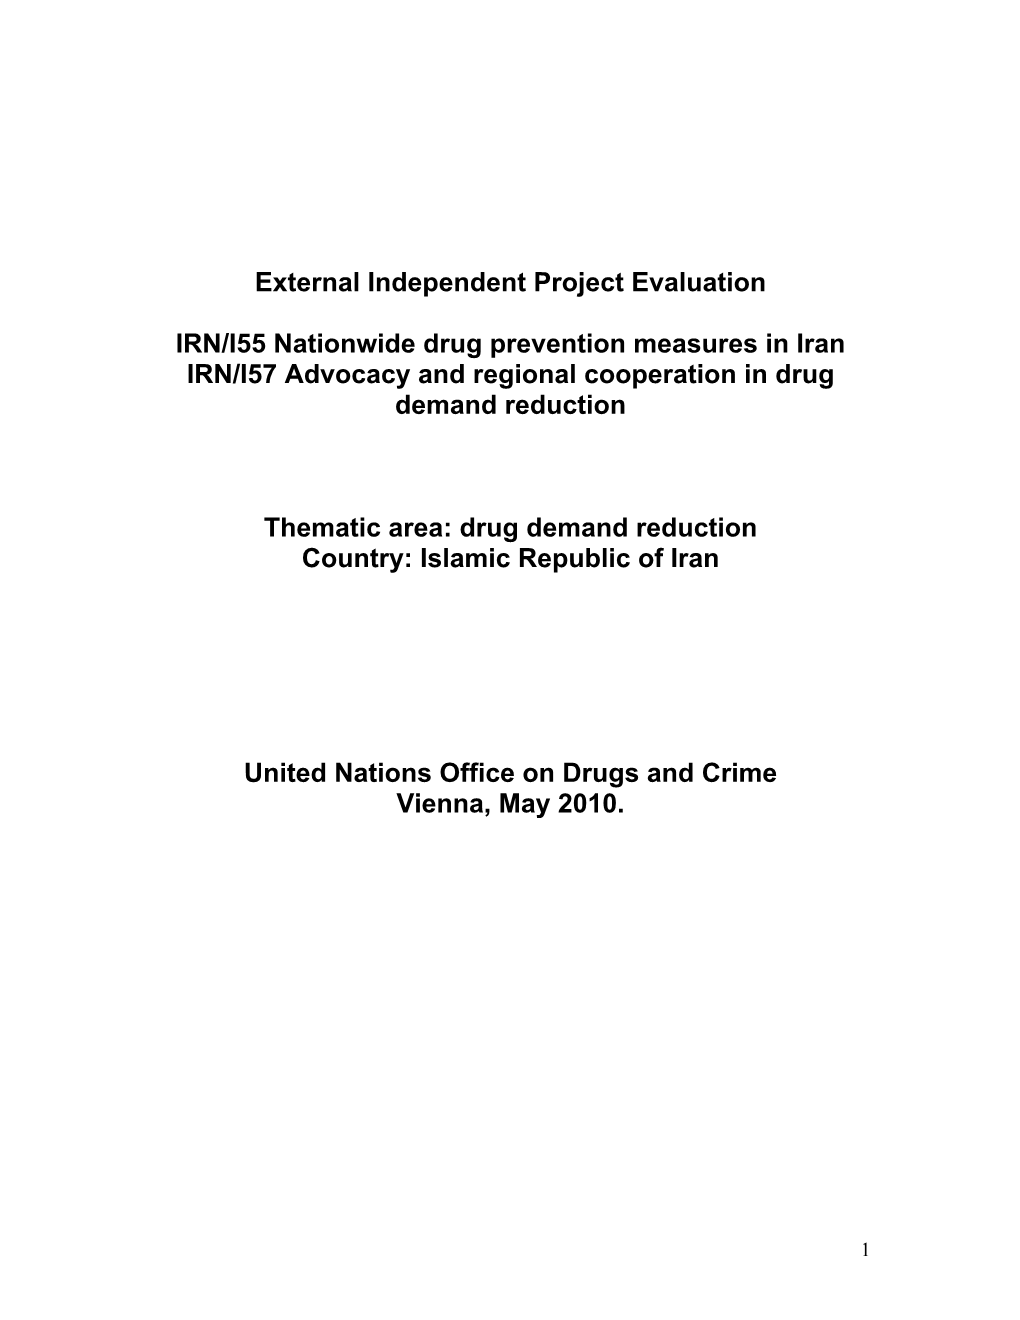 External Independent Project Evaluation IRN/I55 Nationwide Drug